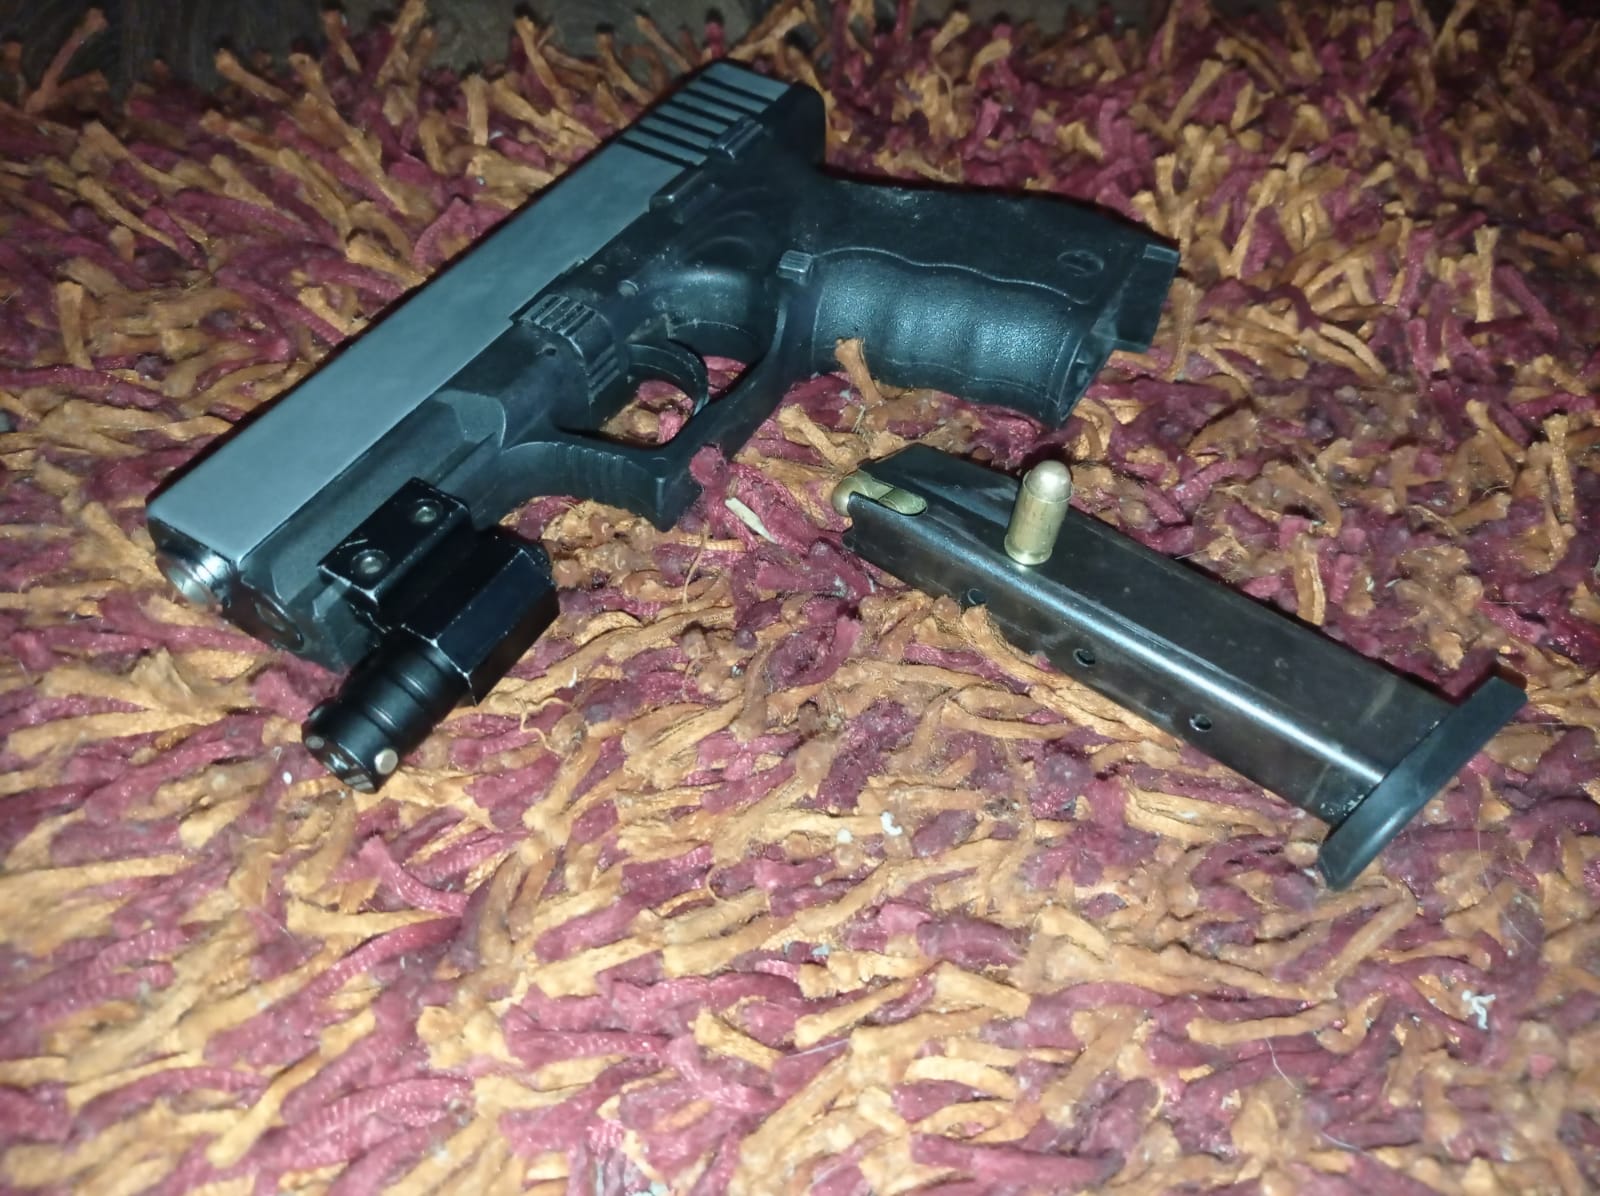 LOS ANDES: Carretearon en un Motel y dejaron olvidada una pistola modificada